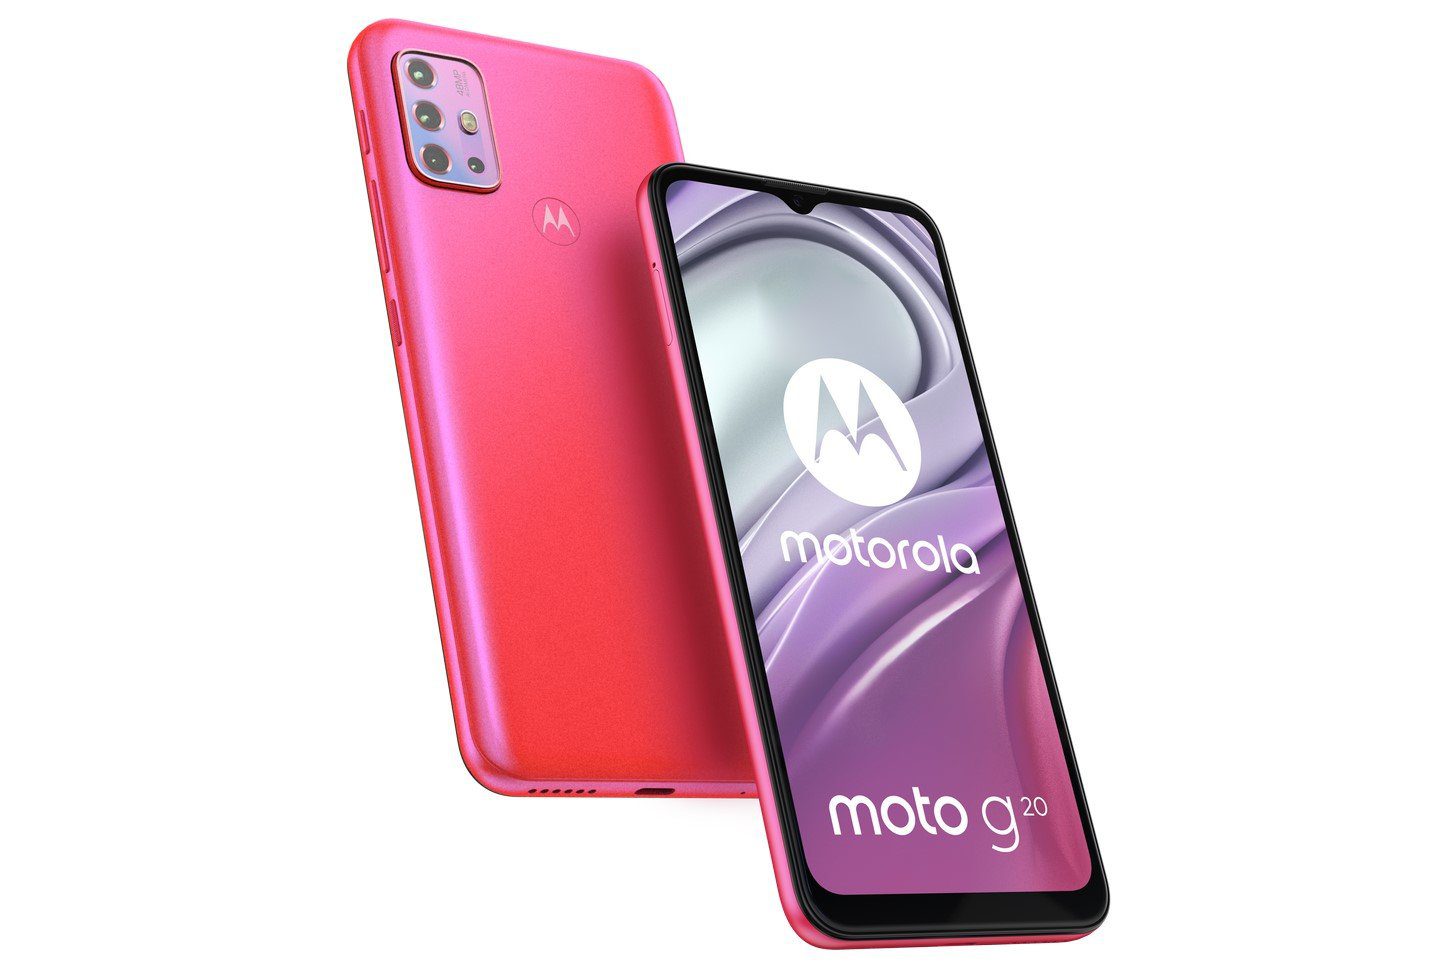 Motorola experimentiert mit Prozessoren. Das neue Moto G20 hat weder Snapdragon noch MediaTek bekommen 2